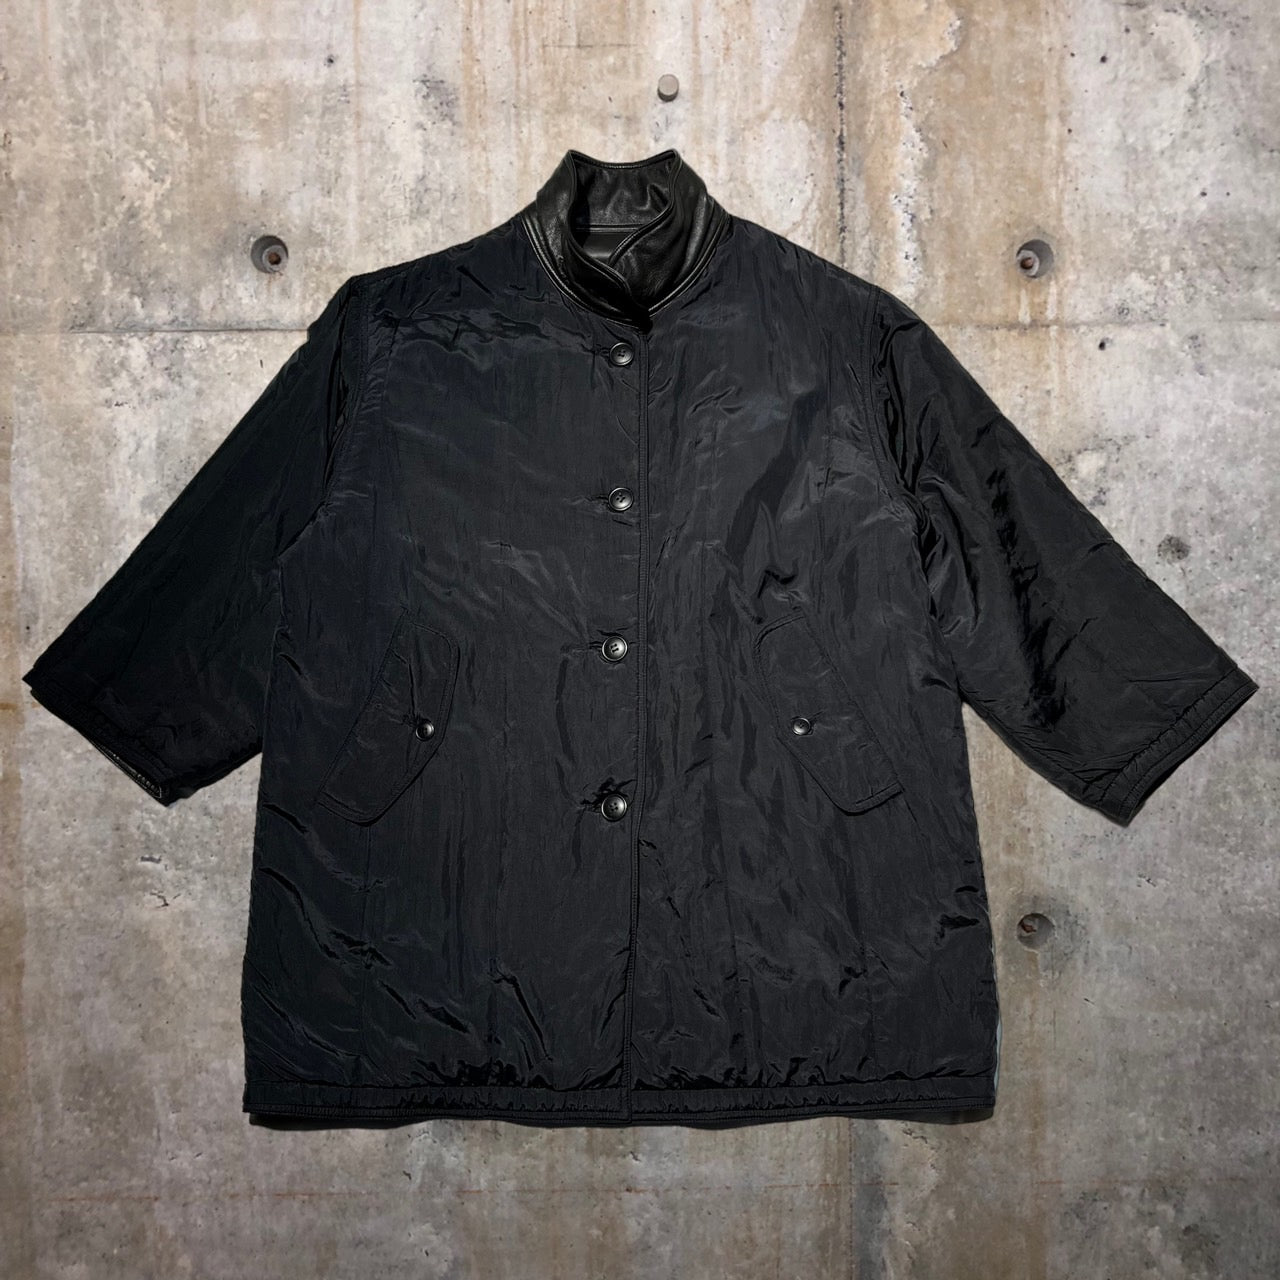 i.s. ISSEY MIYAKE(アイエスイッセイミヤケ) 88's ”is”logo reversible leather  coat/リバーシブルレザーコート RQ63038 9(XLサイズ程度) ブラック IS TSUMORI CHISATO DESIGN